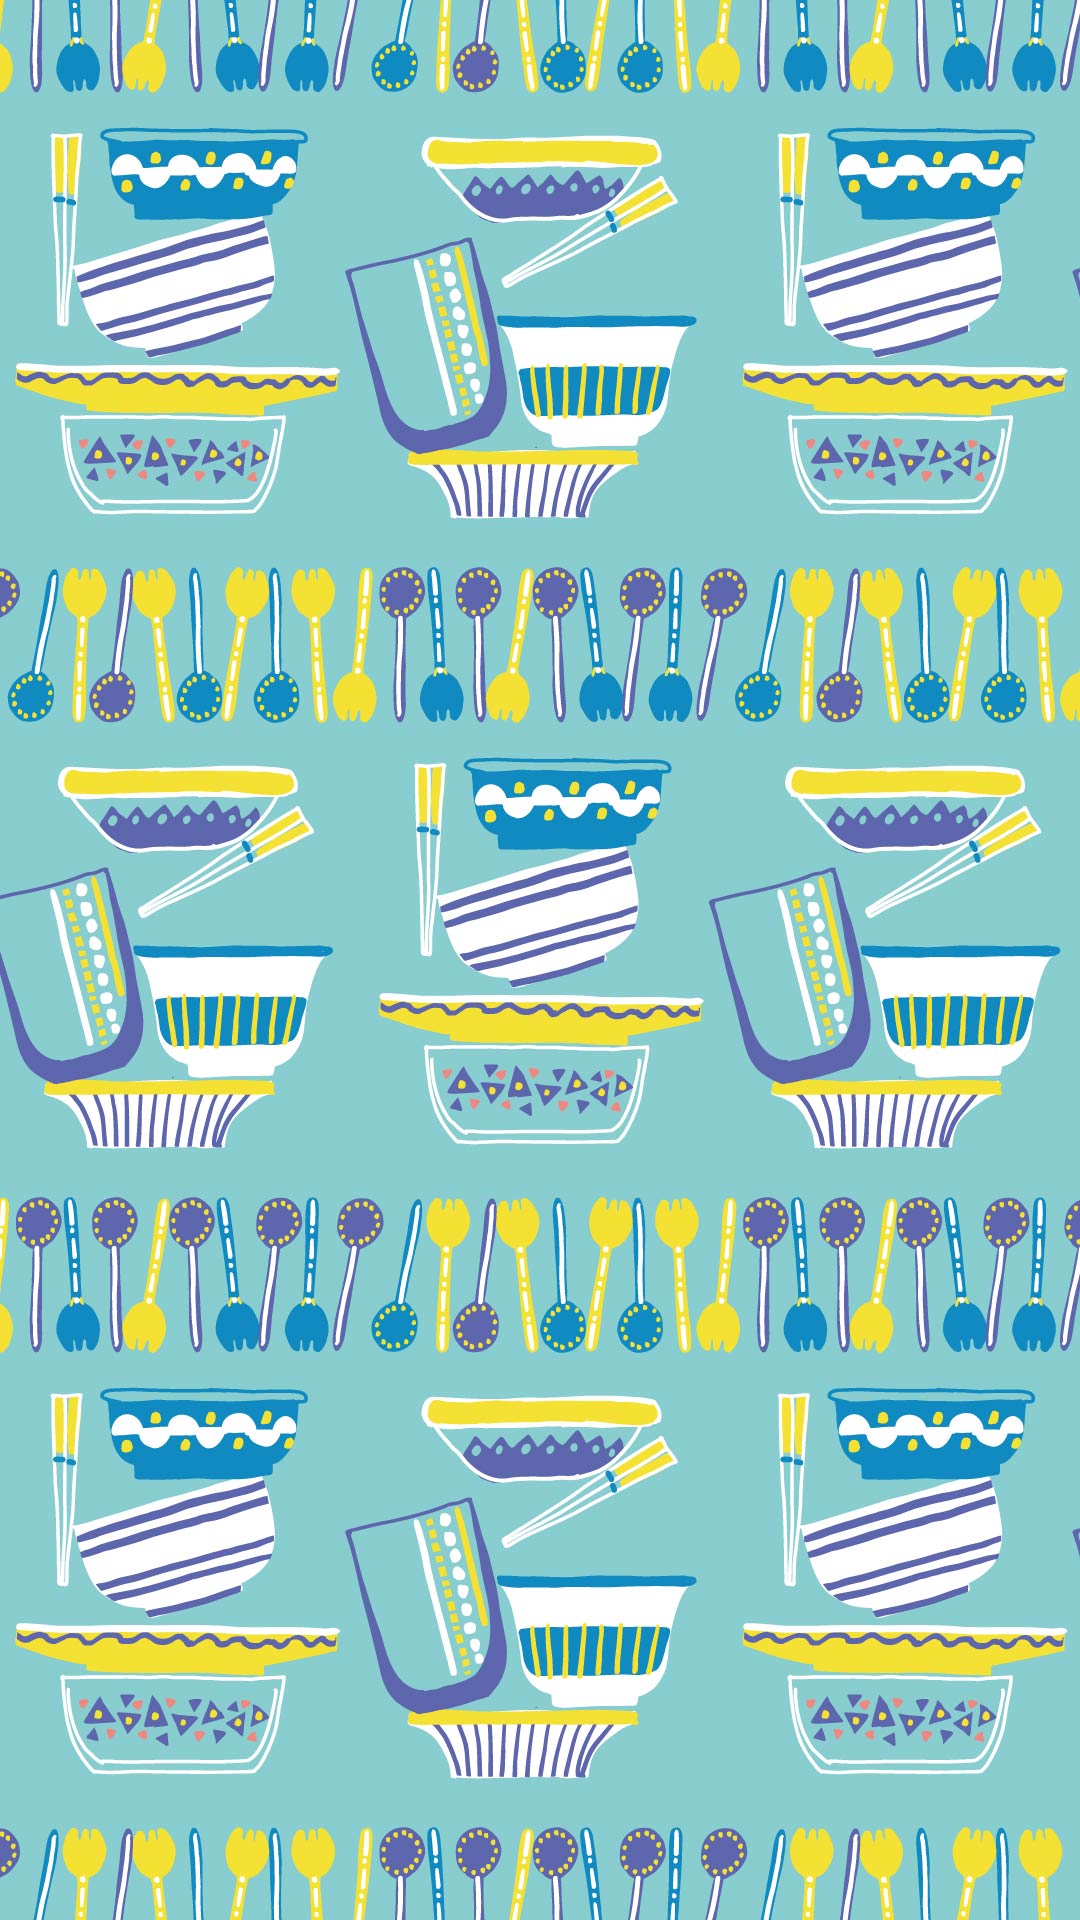 水色の背景に青や黄色のカトラリーと食器のパターン